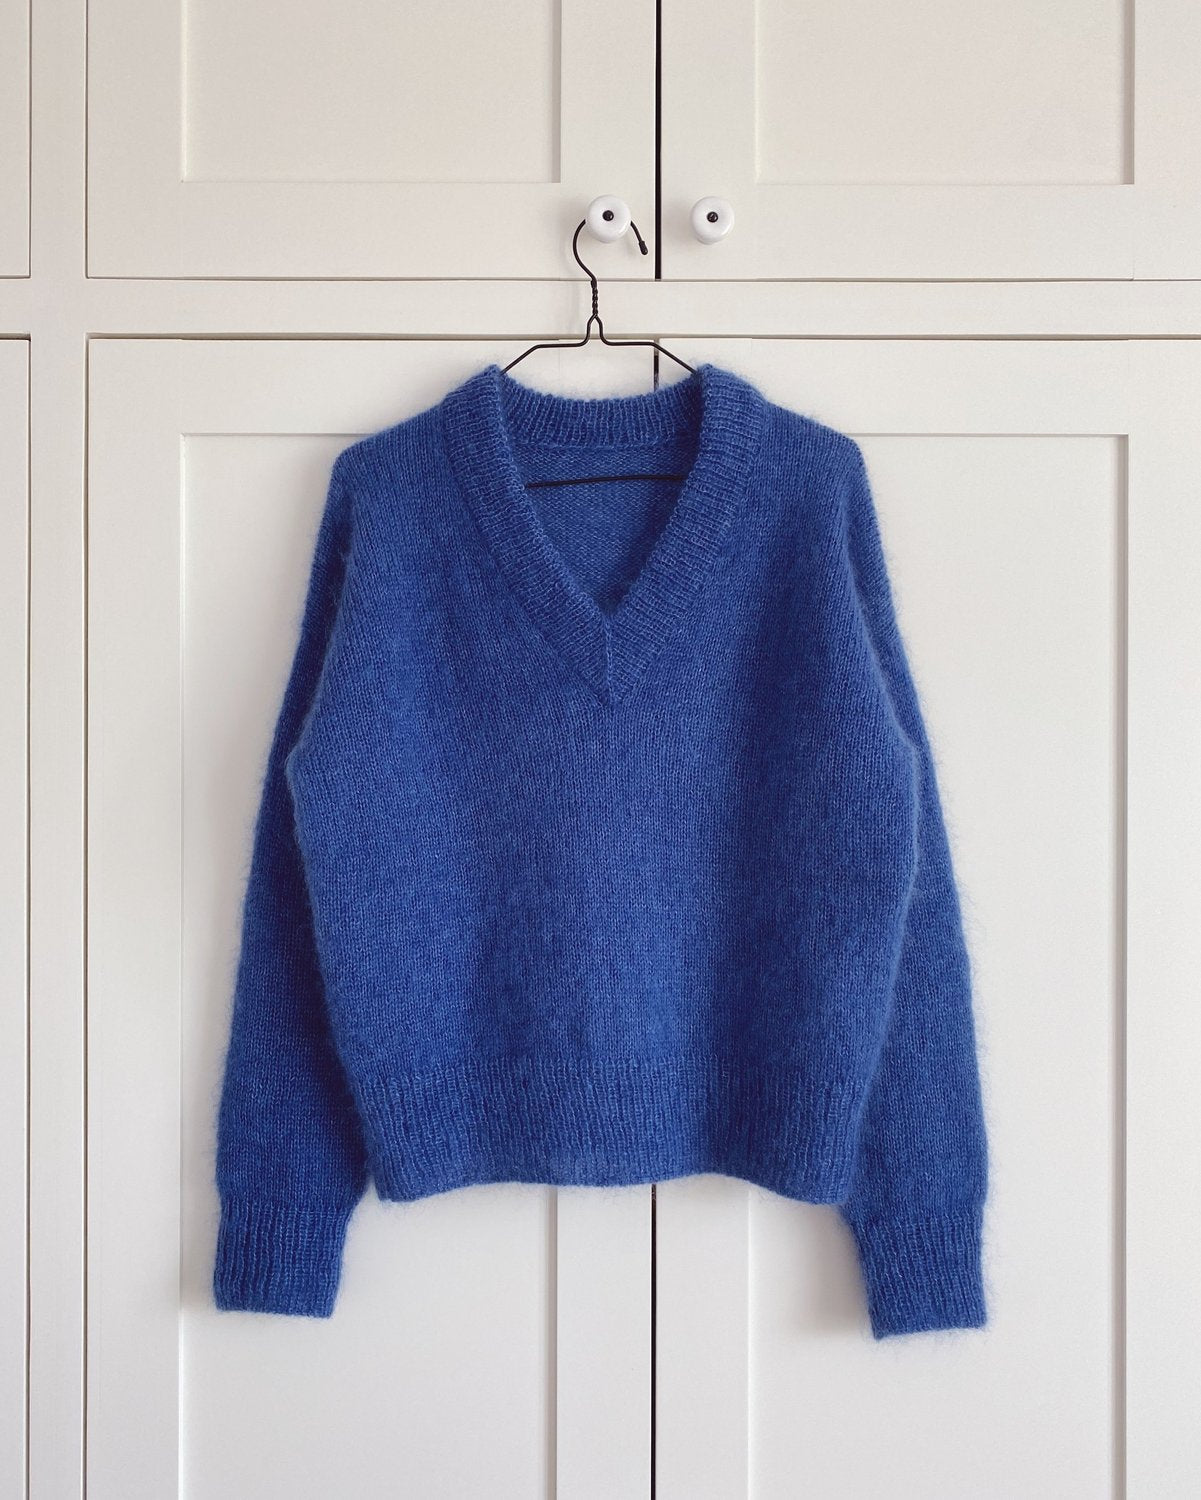 Stockholm Sweater V-Neck PetiteKnit - Strikkekit Mohairsilke